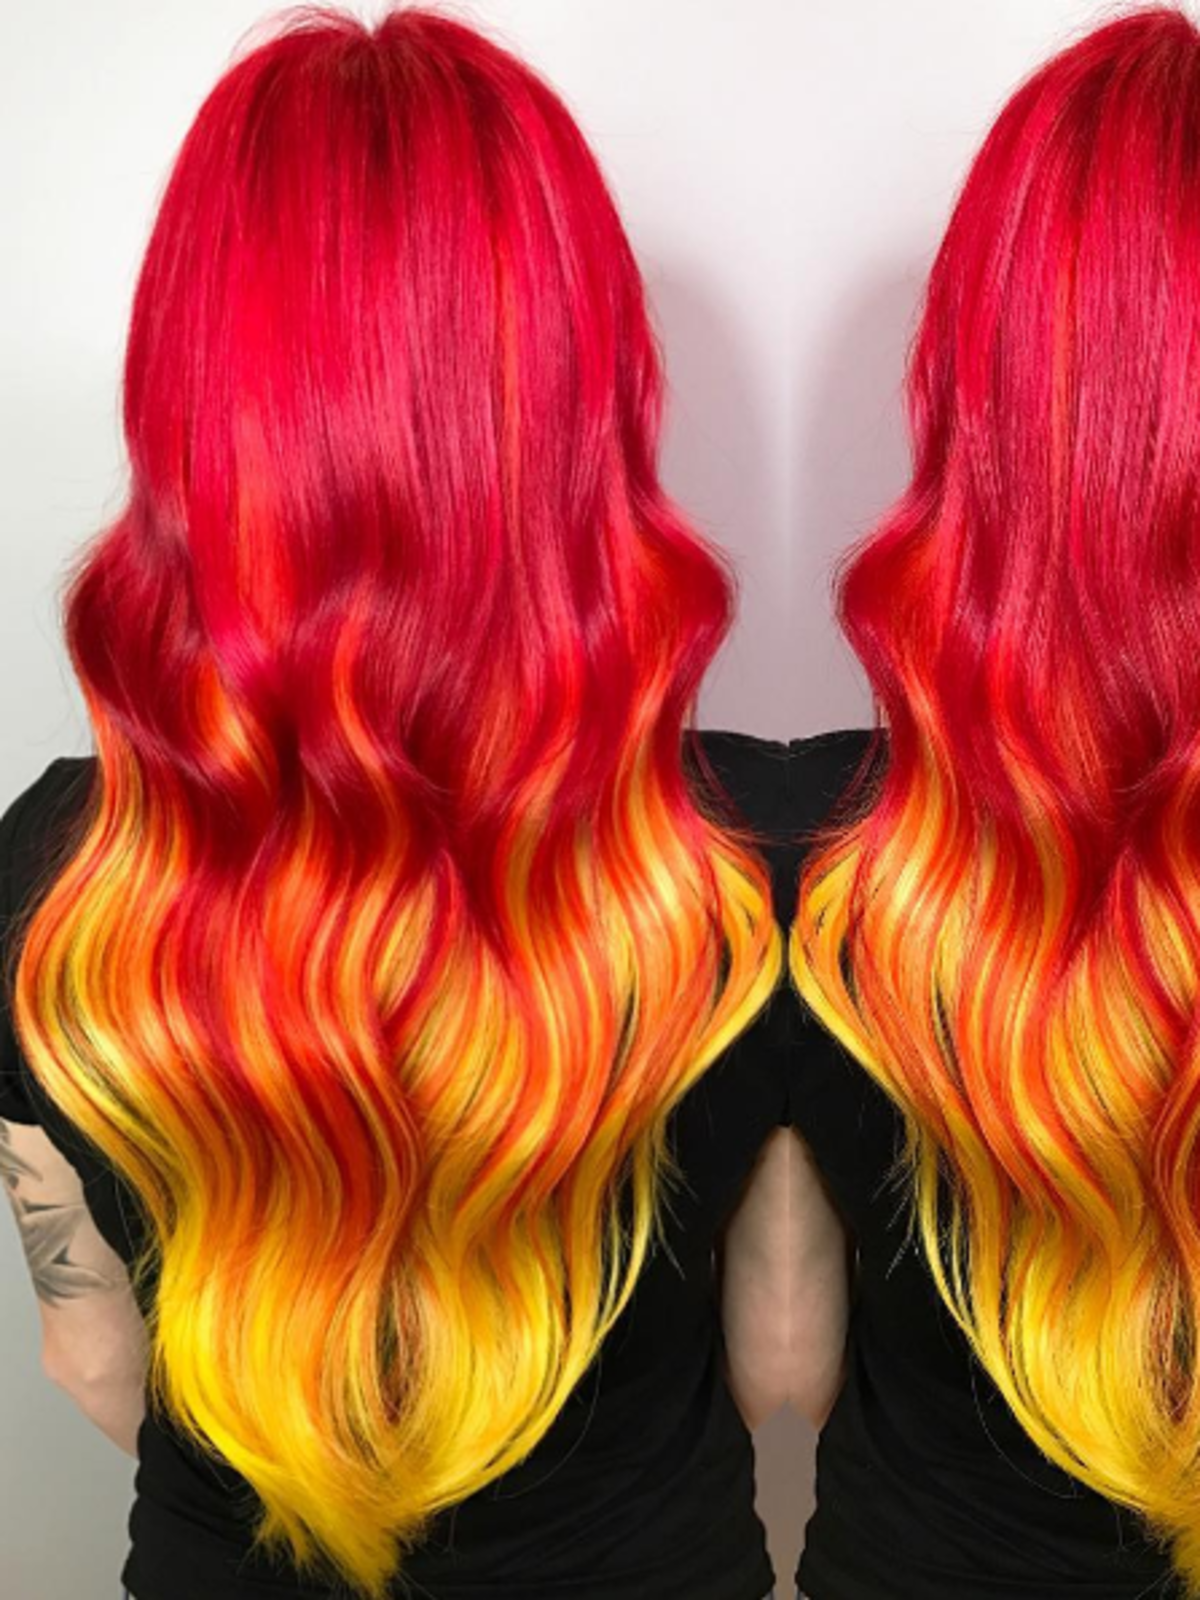 Tangerine hair, czyli sorbetowa koloryzacja włosów